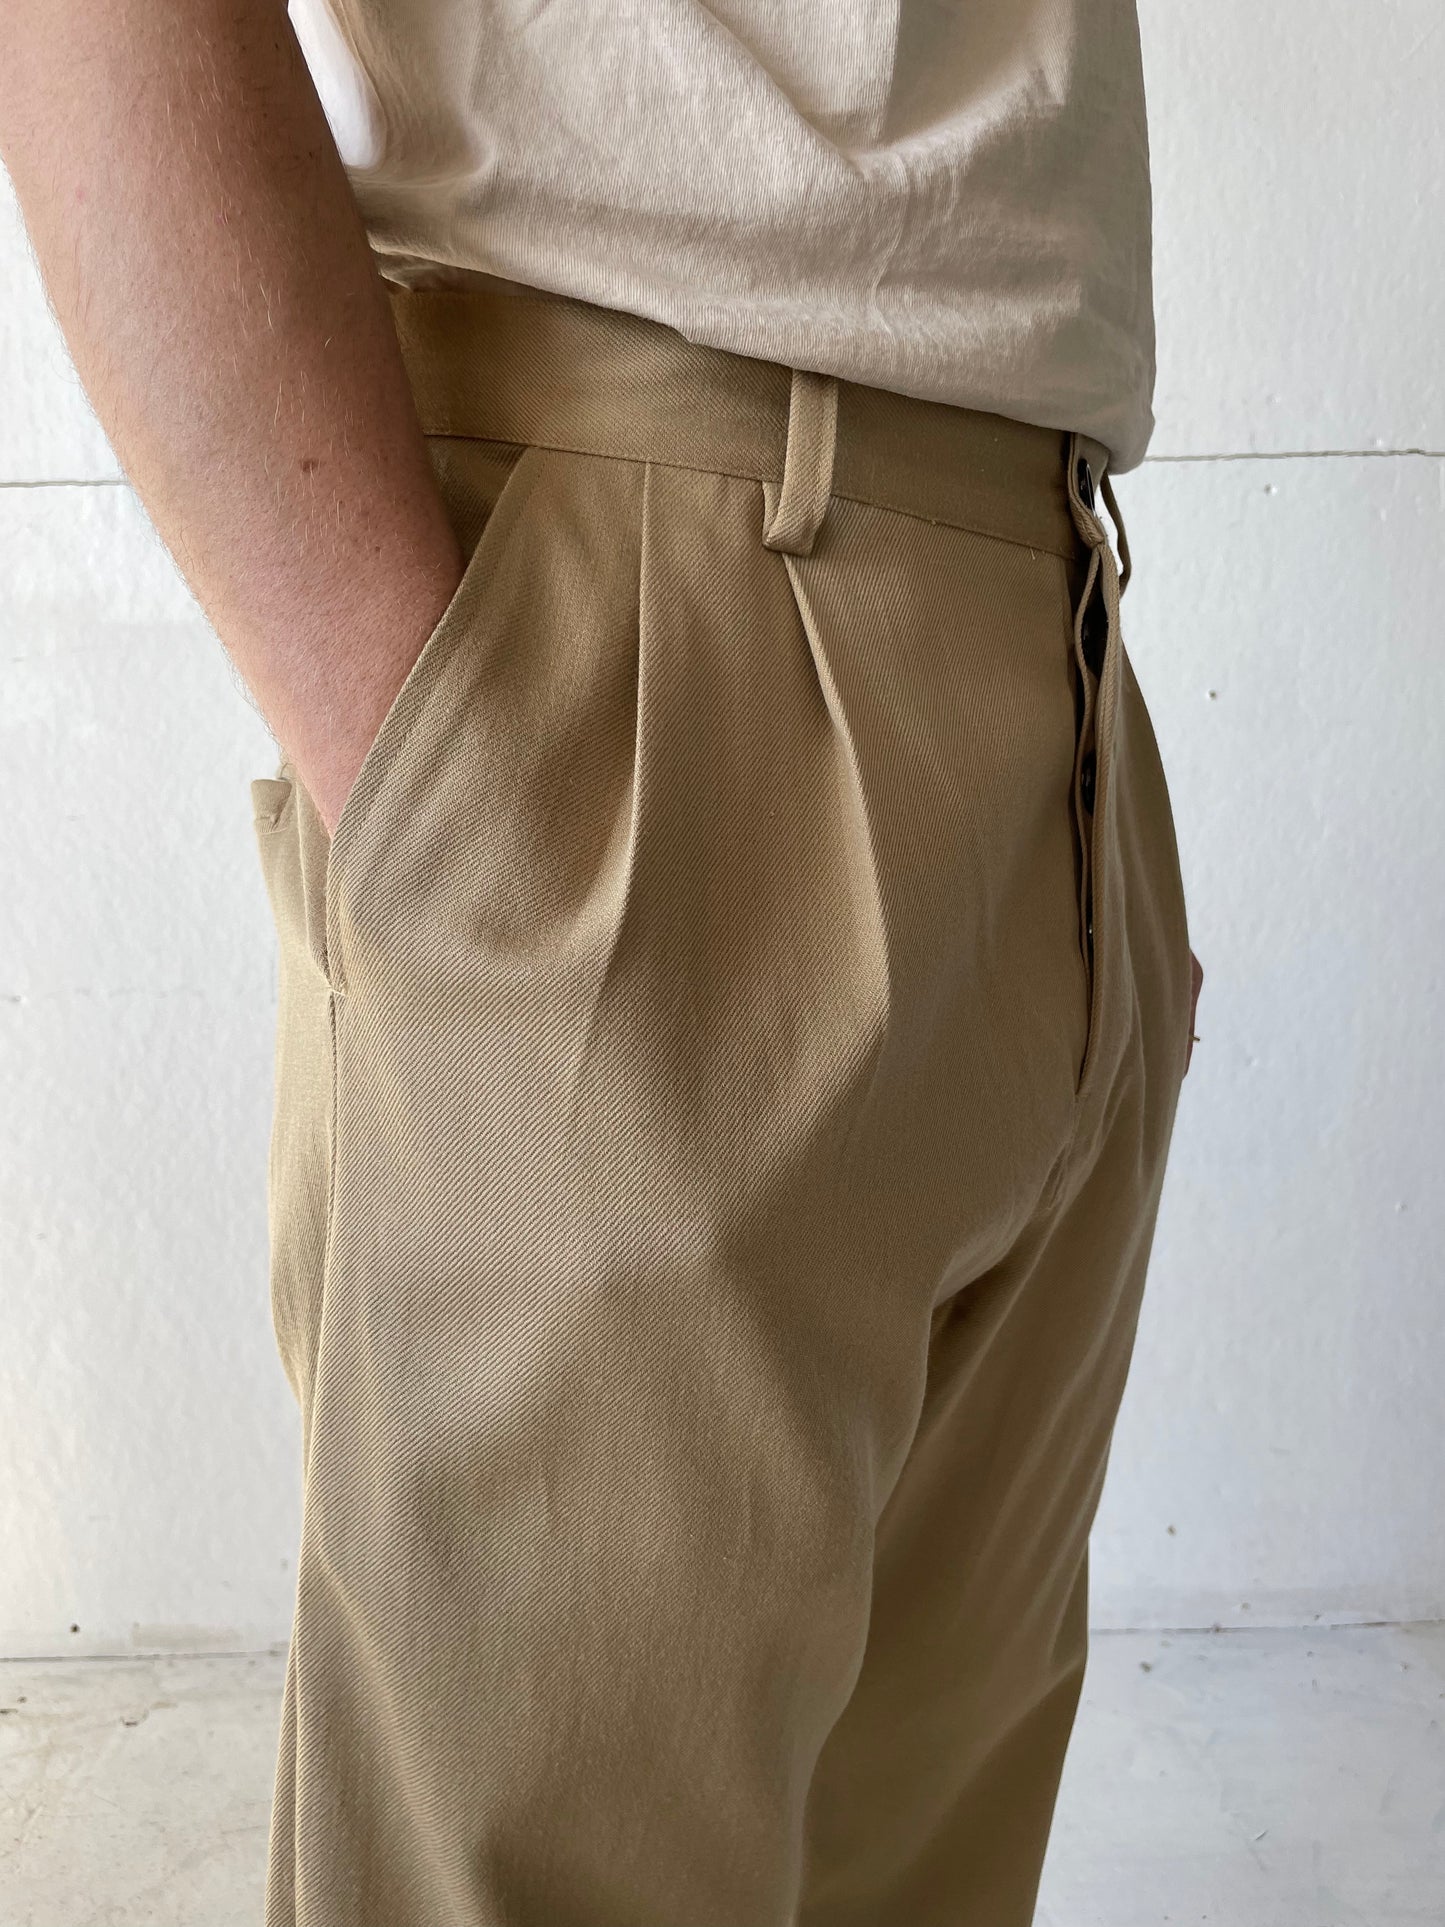 Dress Pants in Cotton/Wool Gabardine